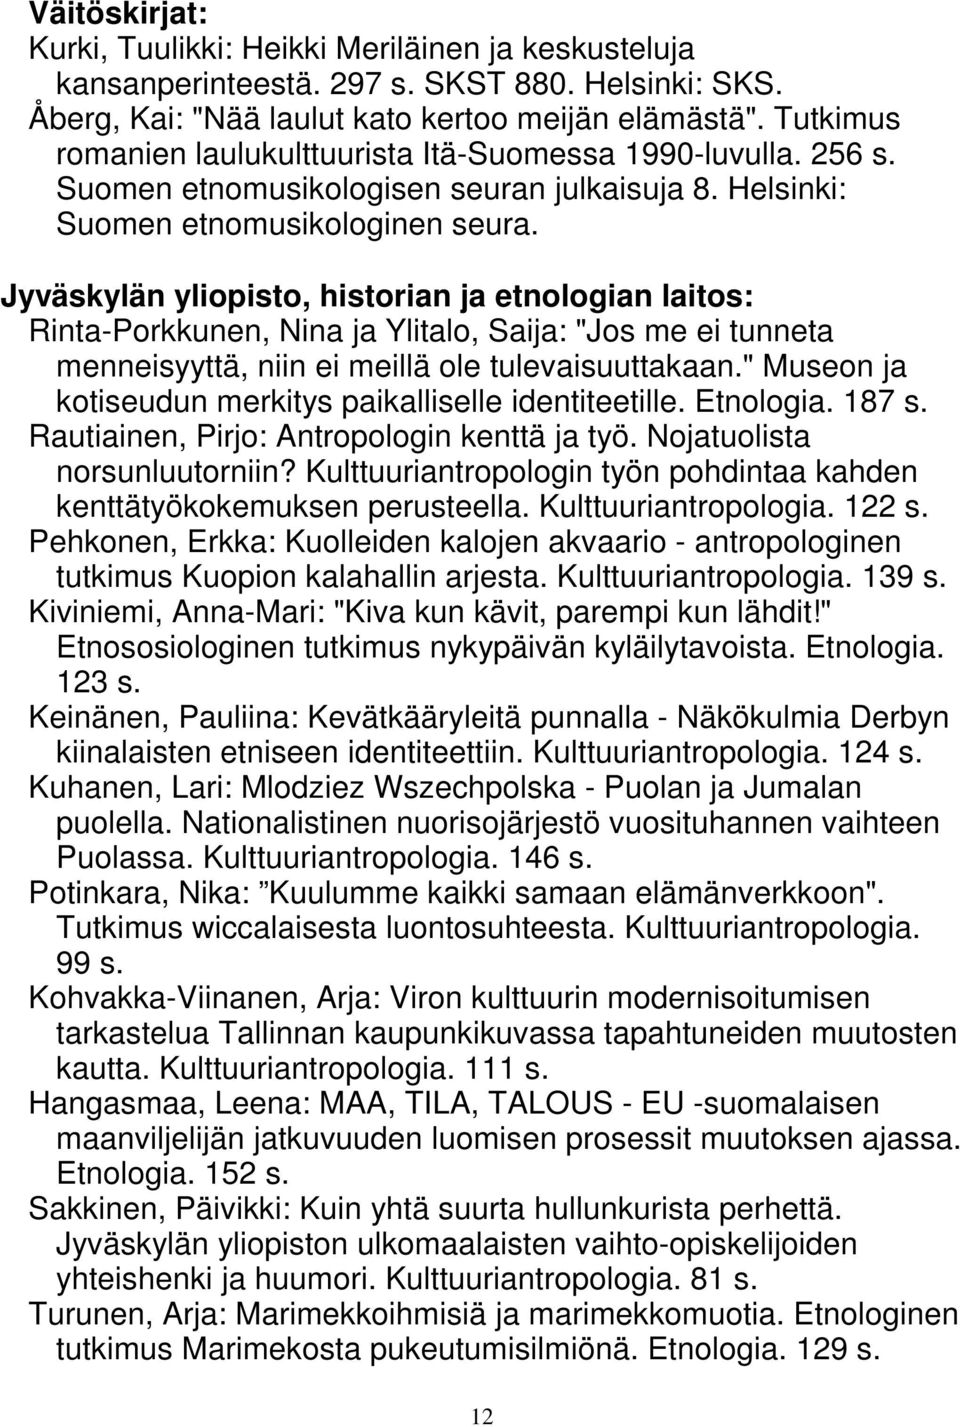 Jyväskylän yliopisto, historian ja etnologian laitos: Rinta-Porkkunen, Nina ja Ylitalo, Saija: "Jos me ei tunneta menneisyyttä, niin ei meillä ole tulevaisuuttakaan.